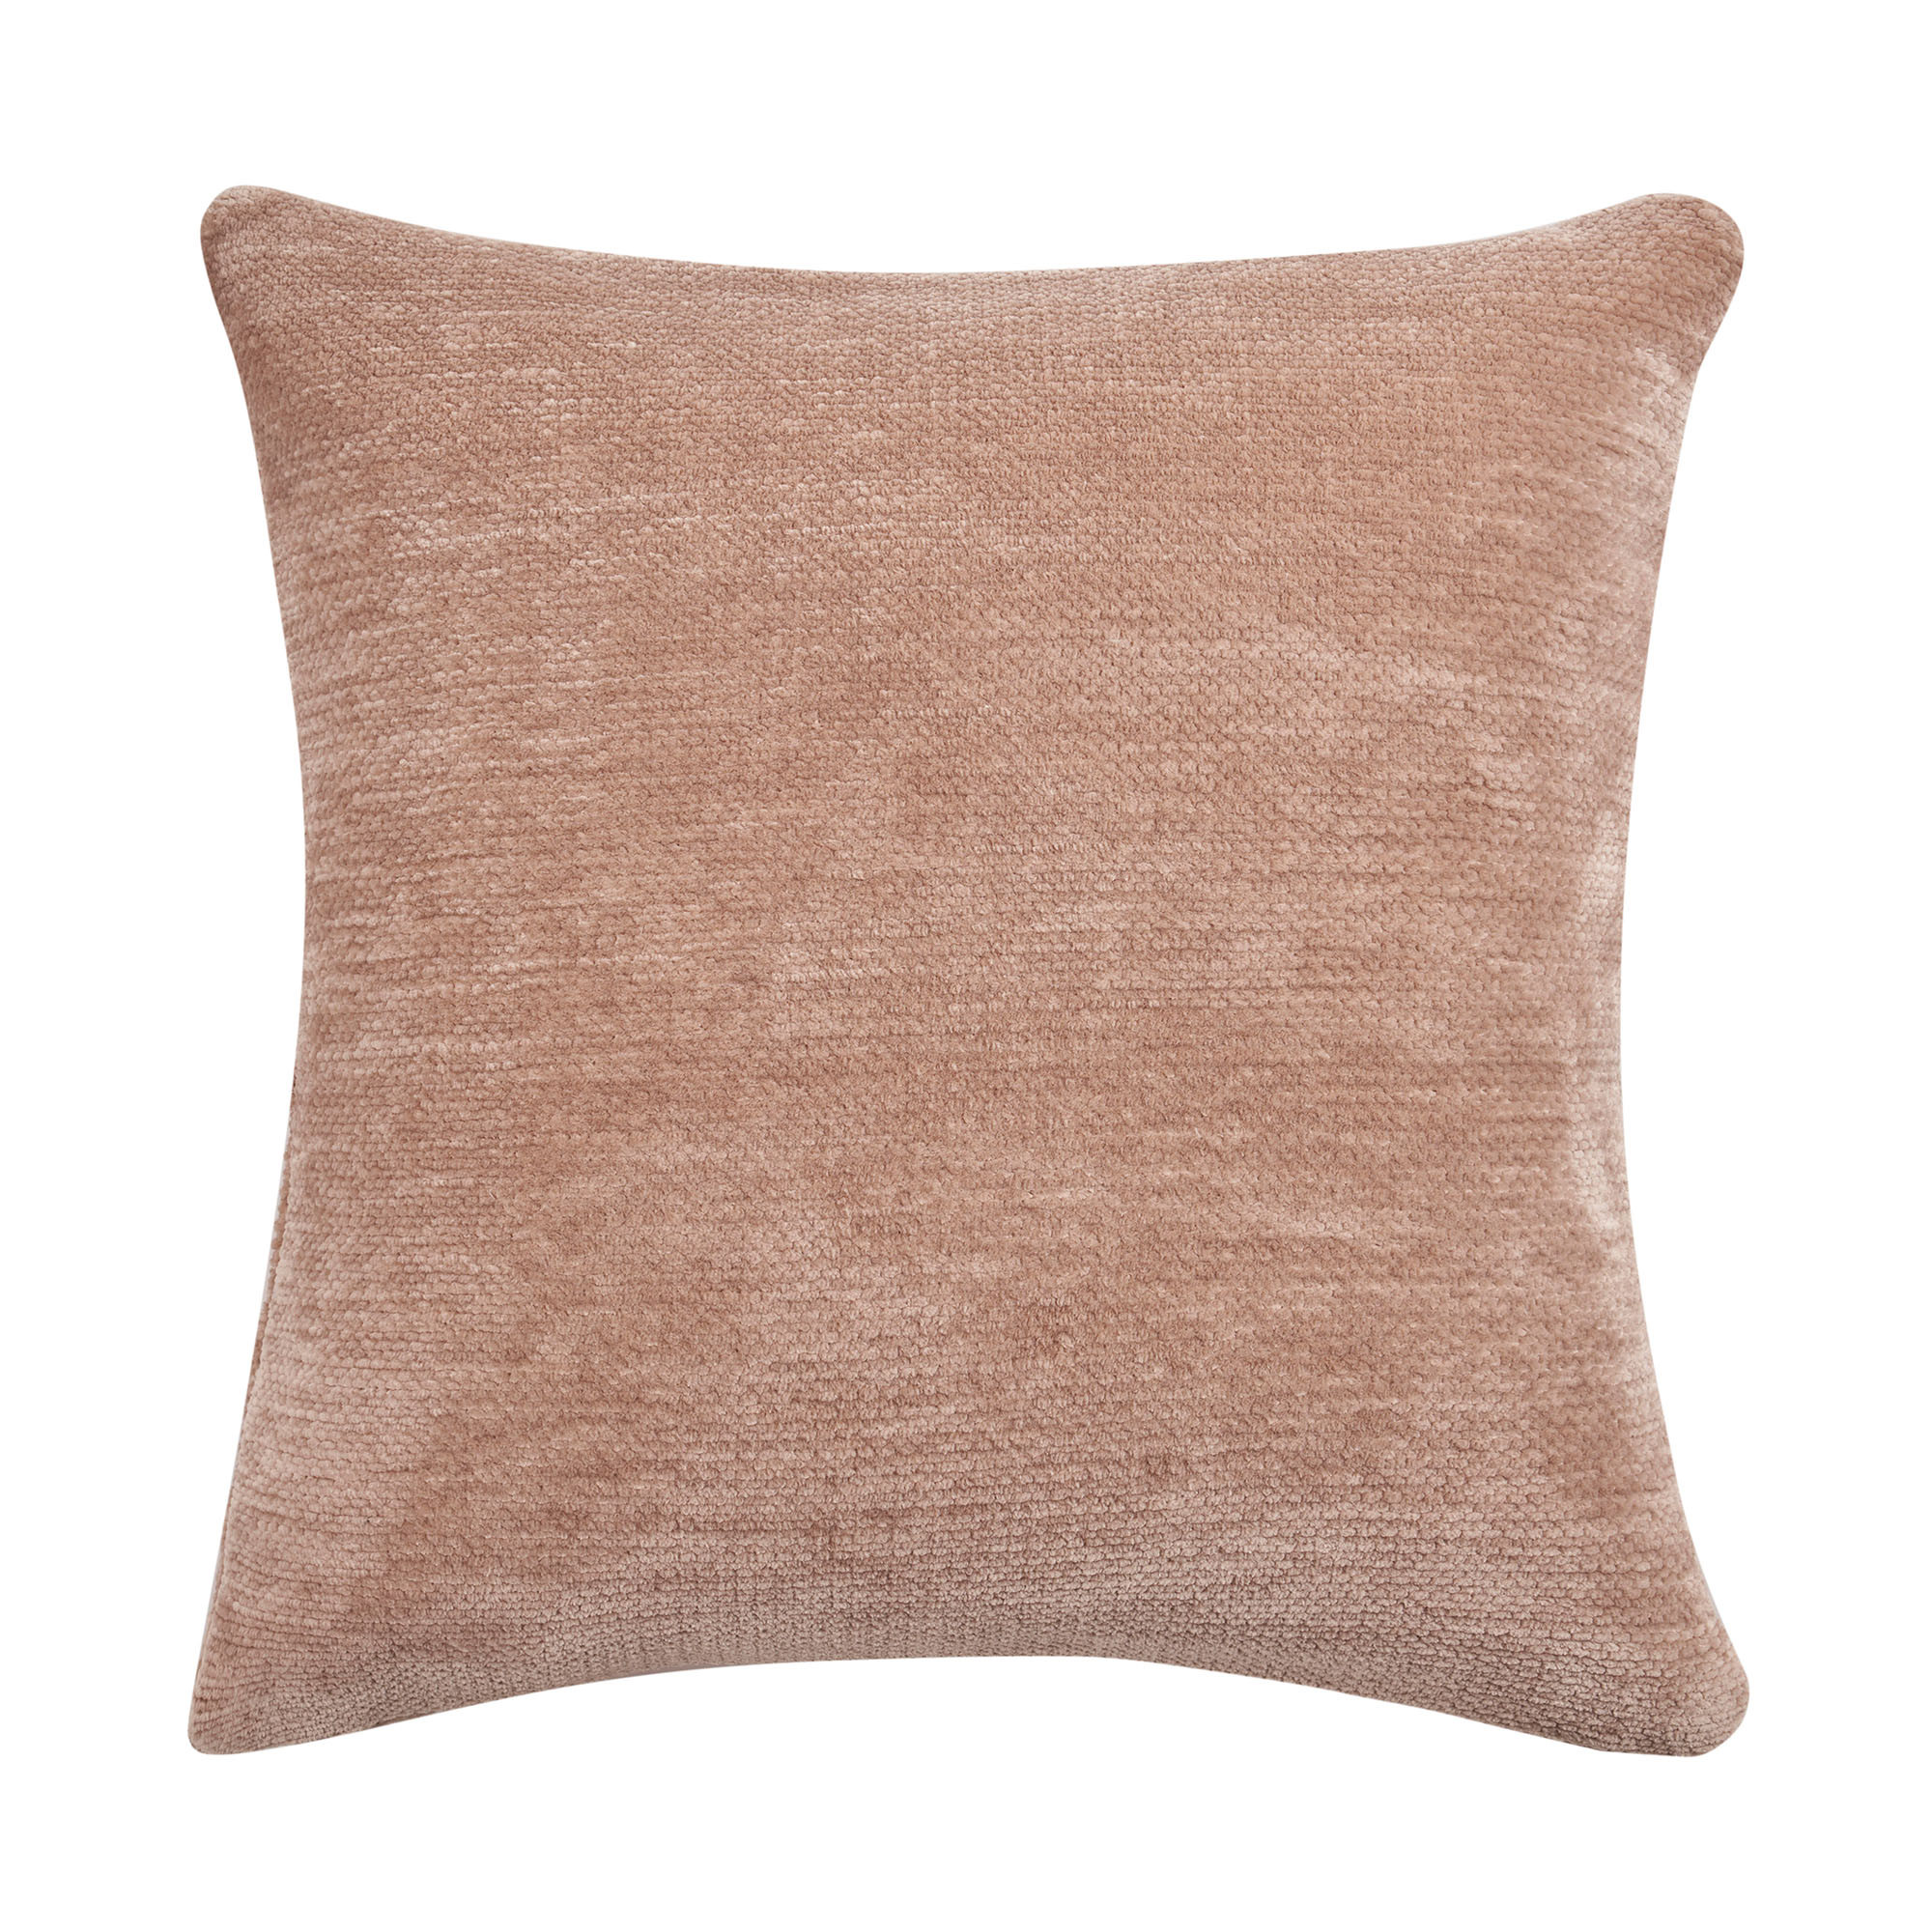 24" X 24" Beige Chenille Zippered Pillow-535252-1